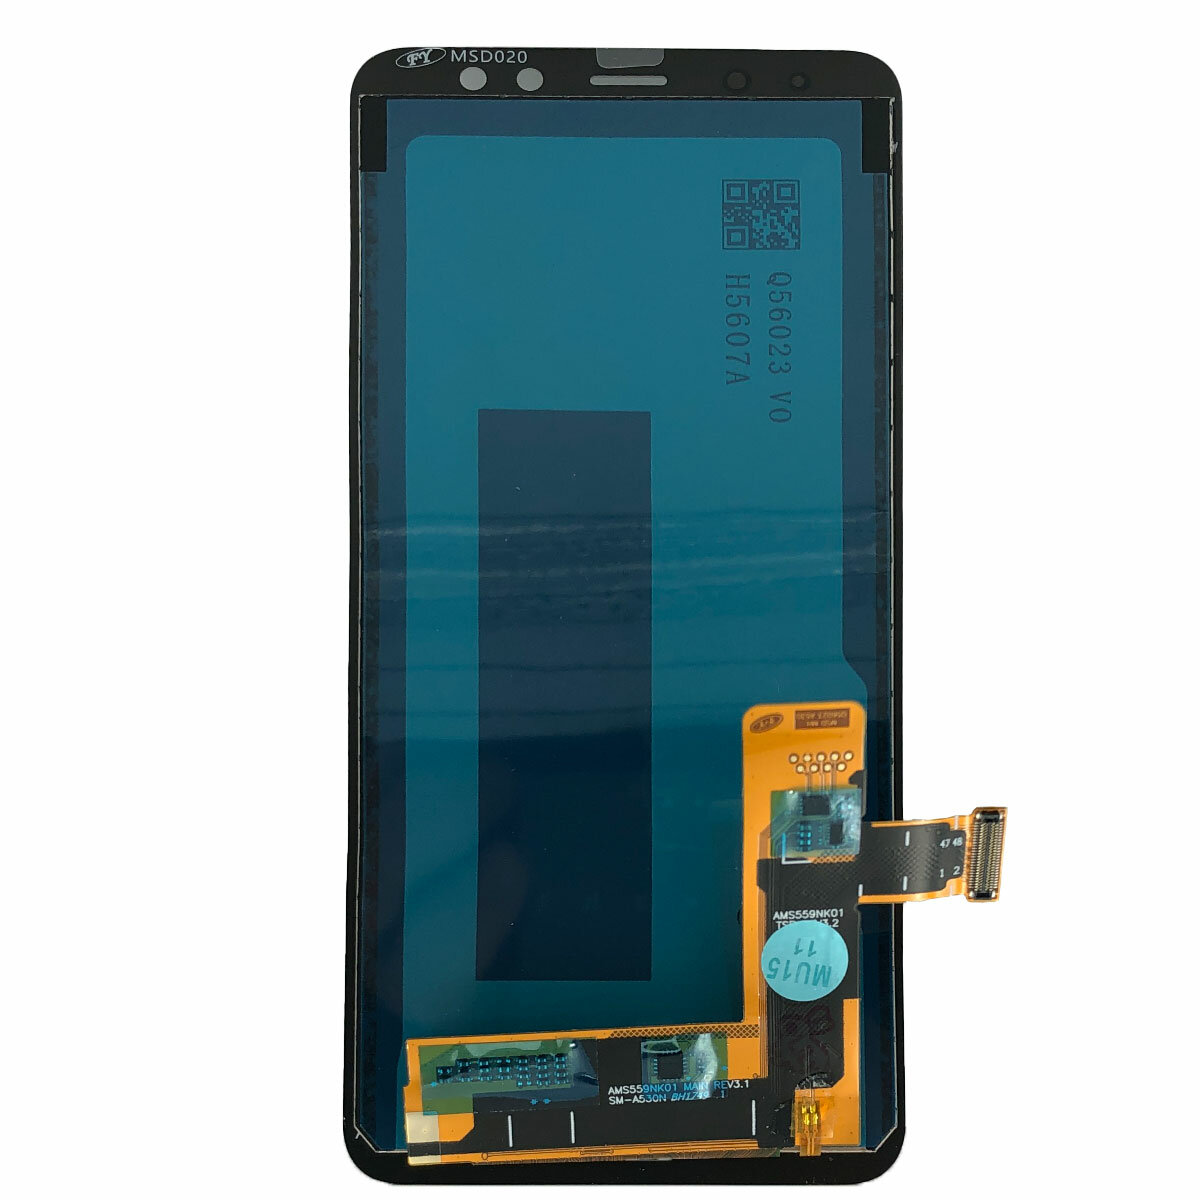 Дисплей с тачскрином для Samsung Galaxy A8 (2018) A530F (черный) TFT